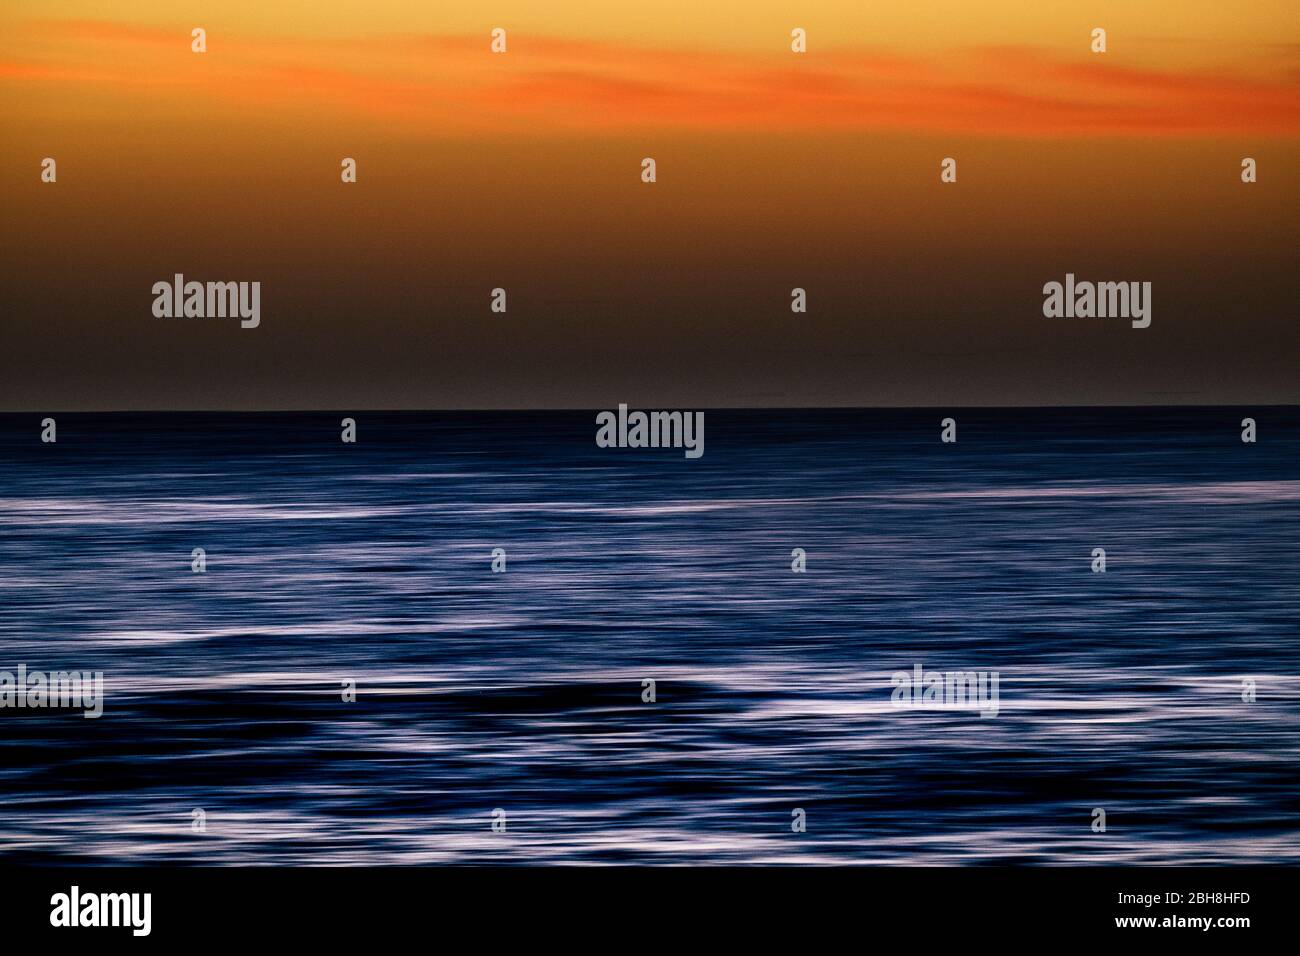 Wasser mit Stretch Bewegung motion Effekt und farbigen Himmel - Sonnenuntergang Zeit mit touristischen und Ferienhäuser Konzept Stockfoto